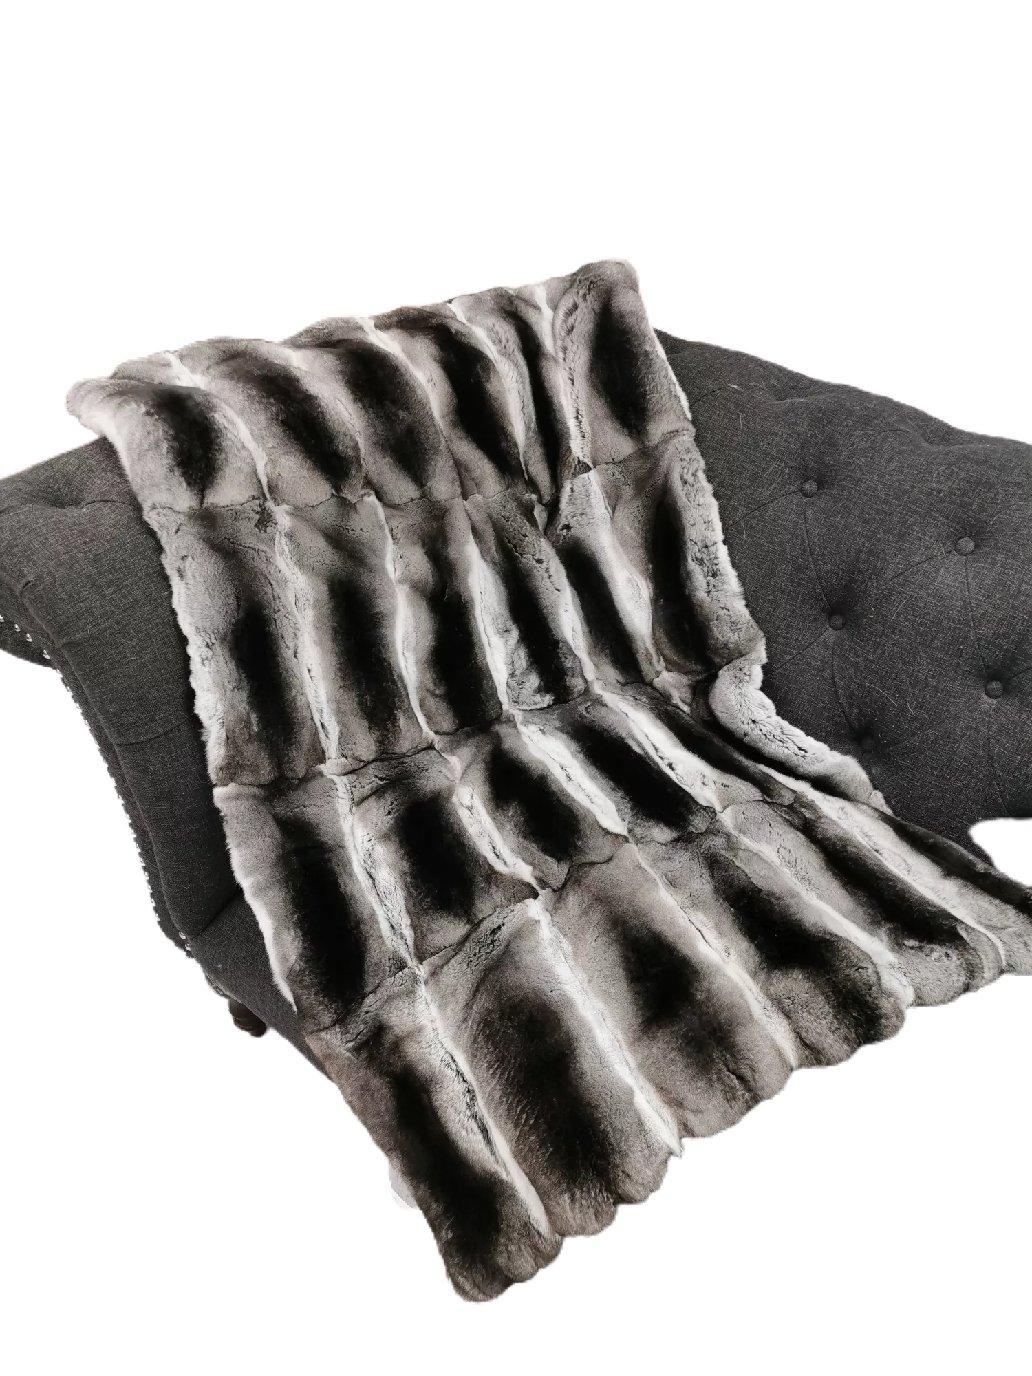 Couverture neuve en fourrure de chinchilla naturelle avec une doublure en satin noir Kasha (pour une doublure en cachemire/laine, veuillez nous contacter pour une commande personnalisée). 

Taille 40 